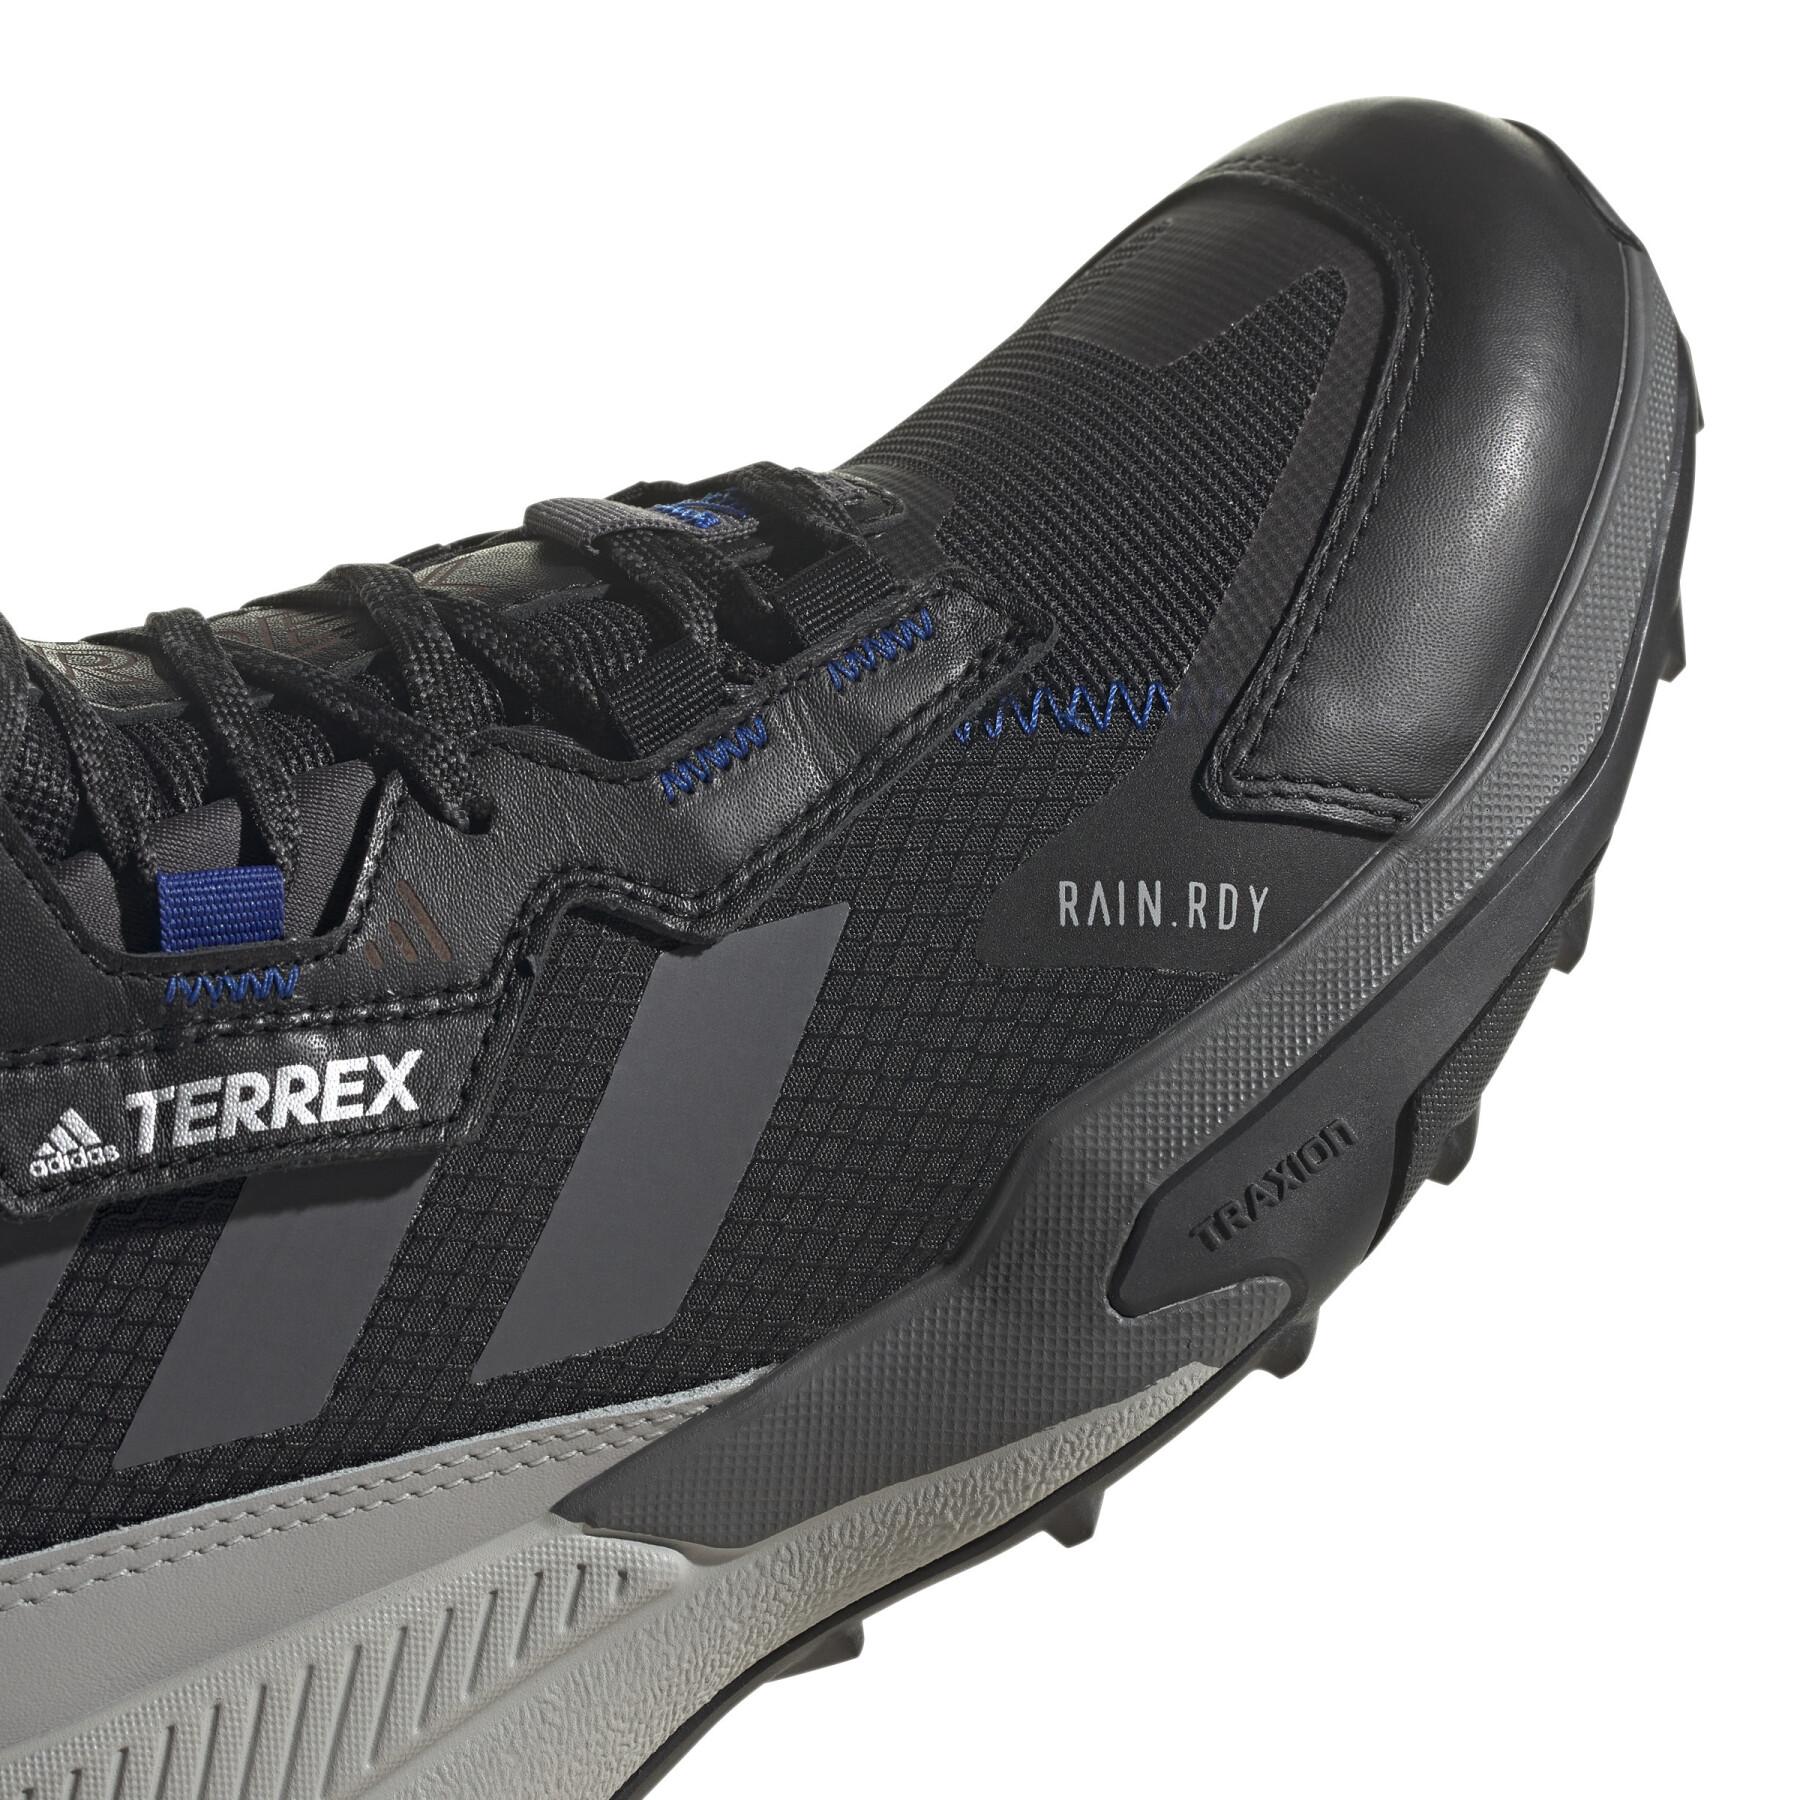 Skor adidas Terrex Hyperblue Mid RAIN.RDY Hiking